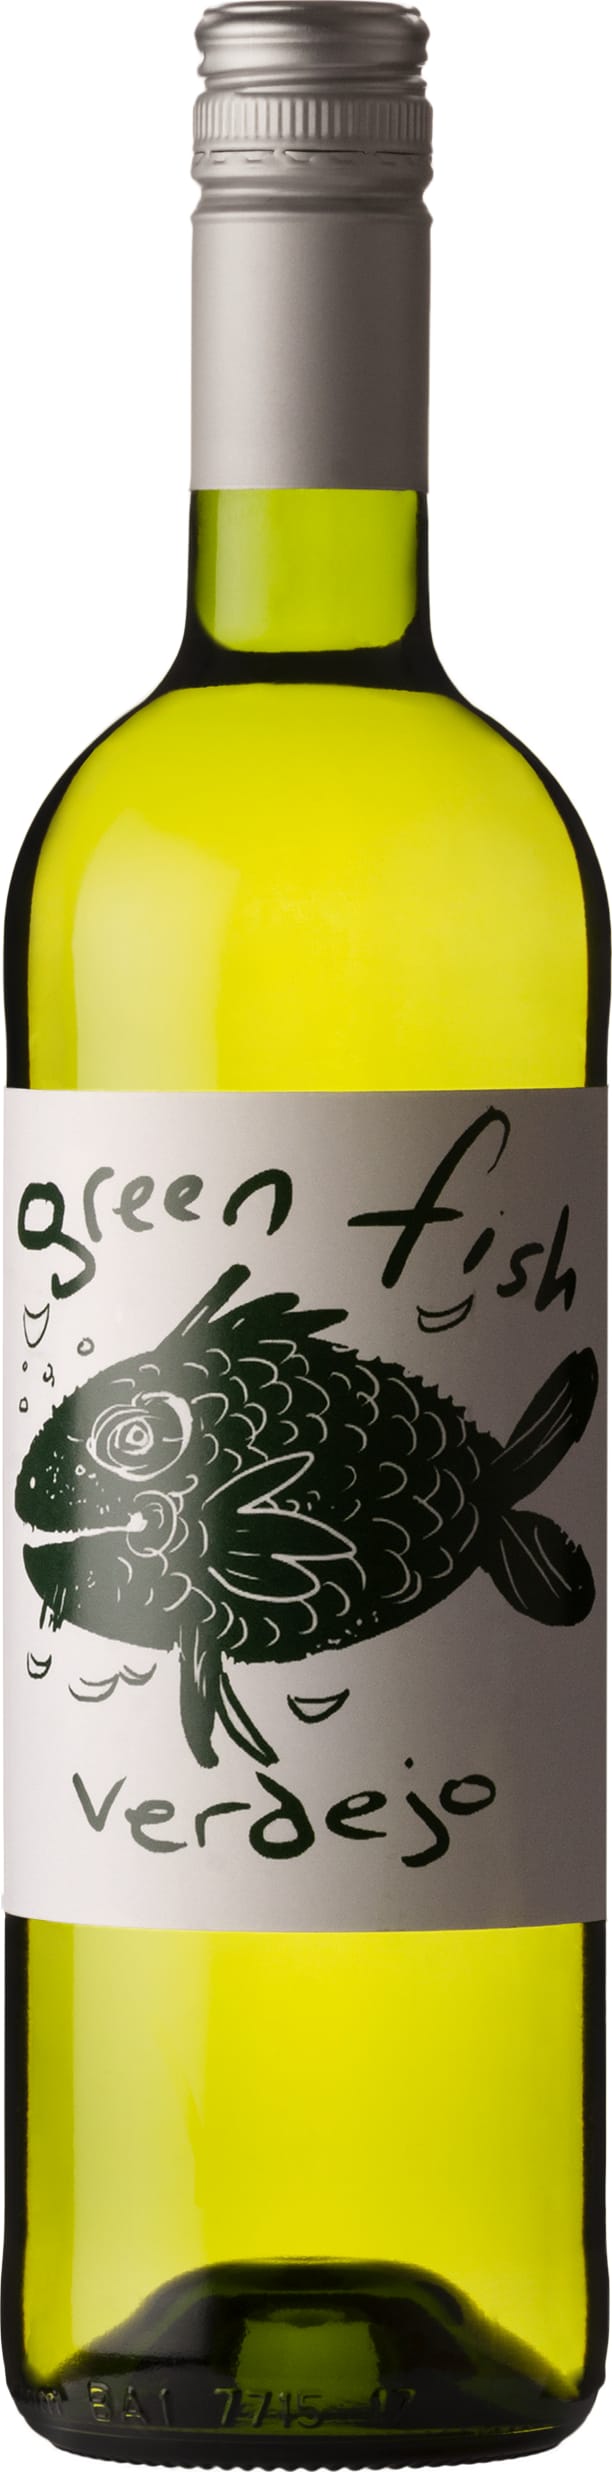 Bodegas Gallegas Green Fish Verdejo 2022 75cl - Buy Bodegas Gallegas Wines from GREAT WINES DIRECT wine shop